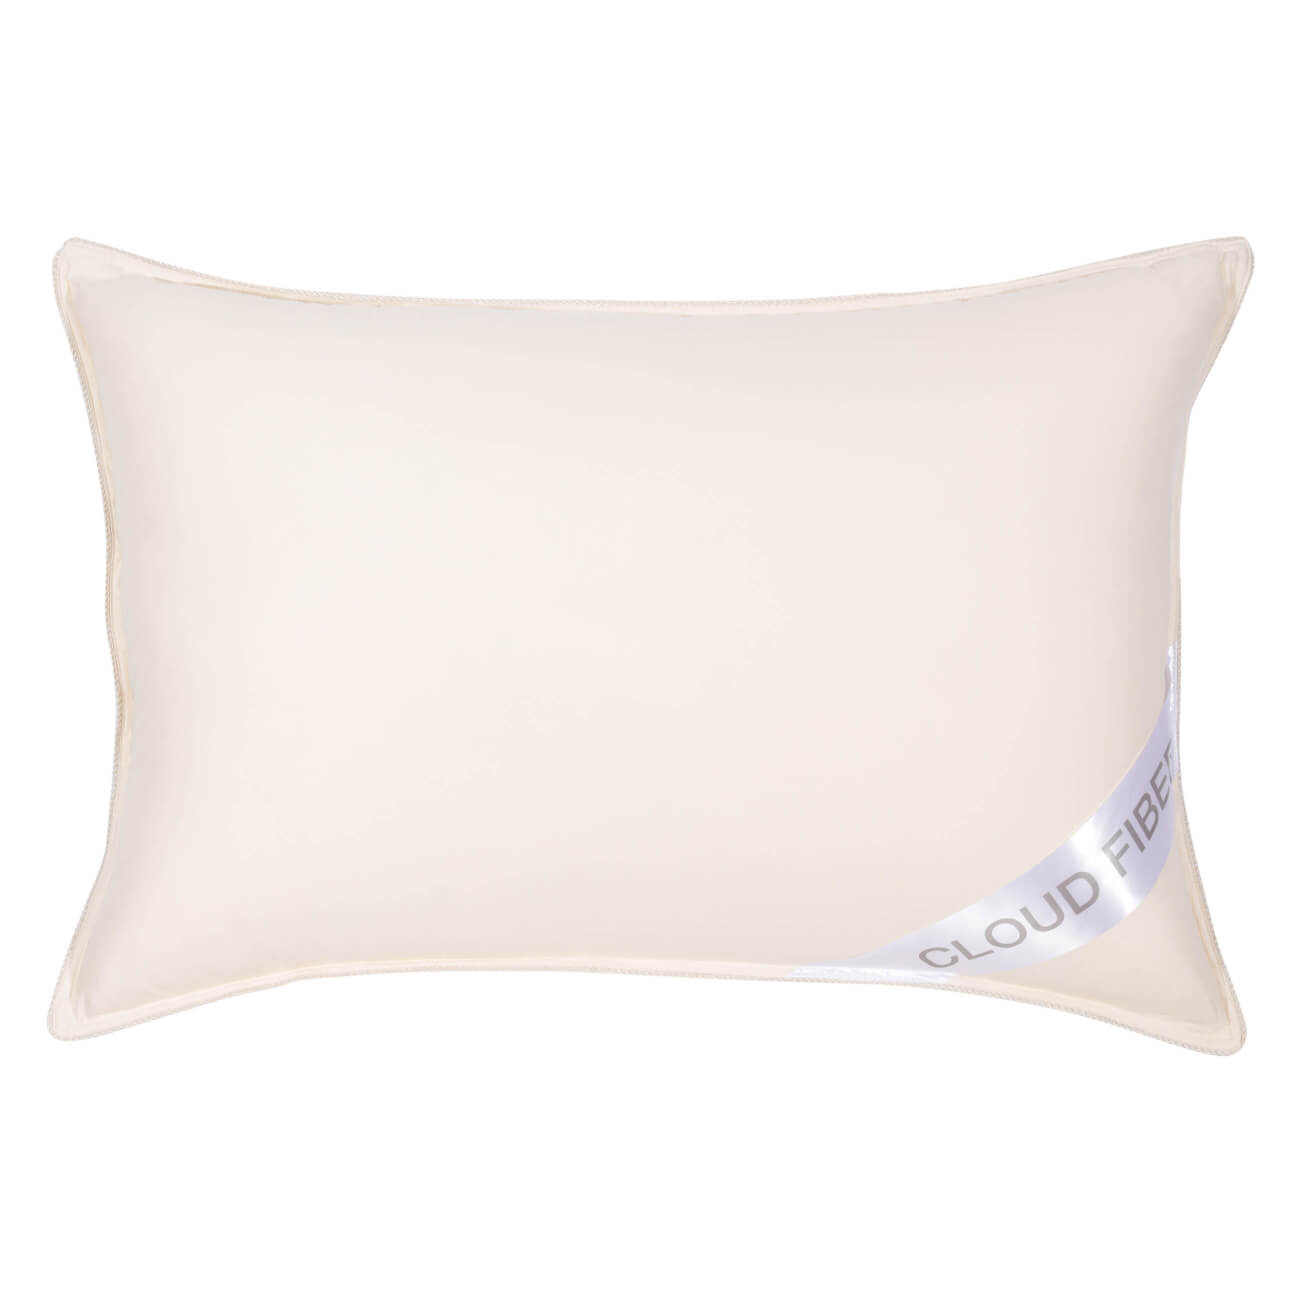 Подушка, 50х70 см, дакрон/микрофибра, молочная, Cloud fiber подушка для шеи дорожная надувная 38 × 24 см бордовый